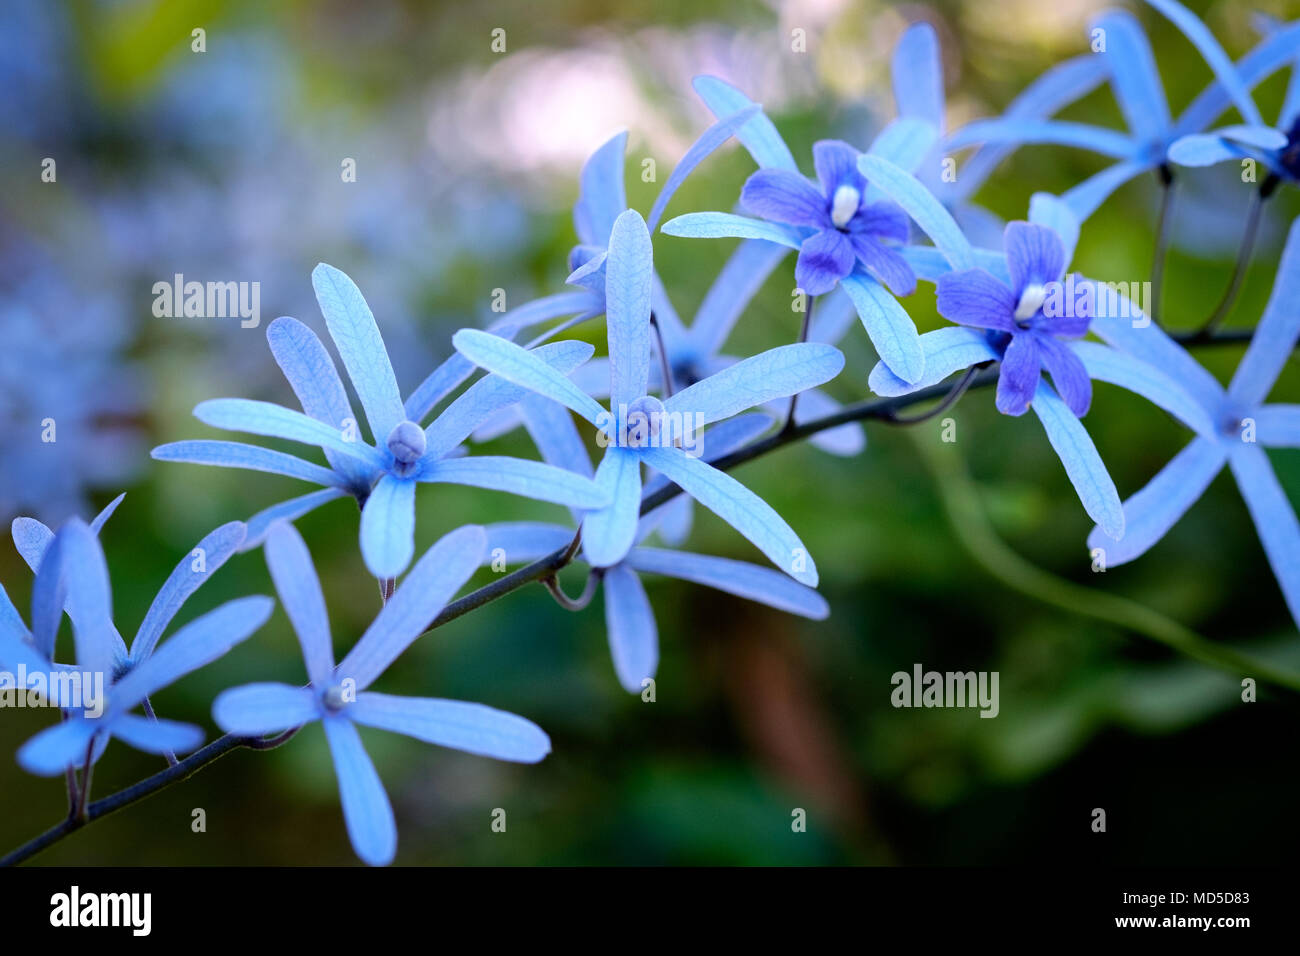 Nahaufnahmen von einem Spray von blauen Blüten mit langen, schmalen Blütenblätter gegen einen unscharfen sub-tropischen Garten Hintergrund Stockfoto